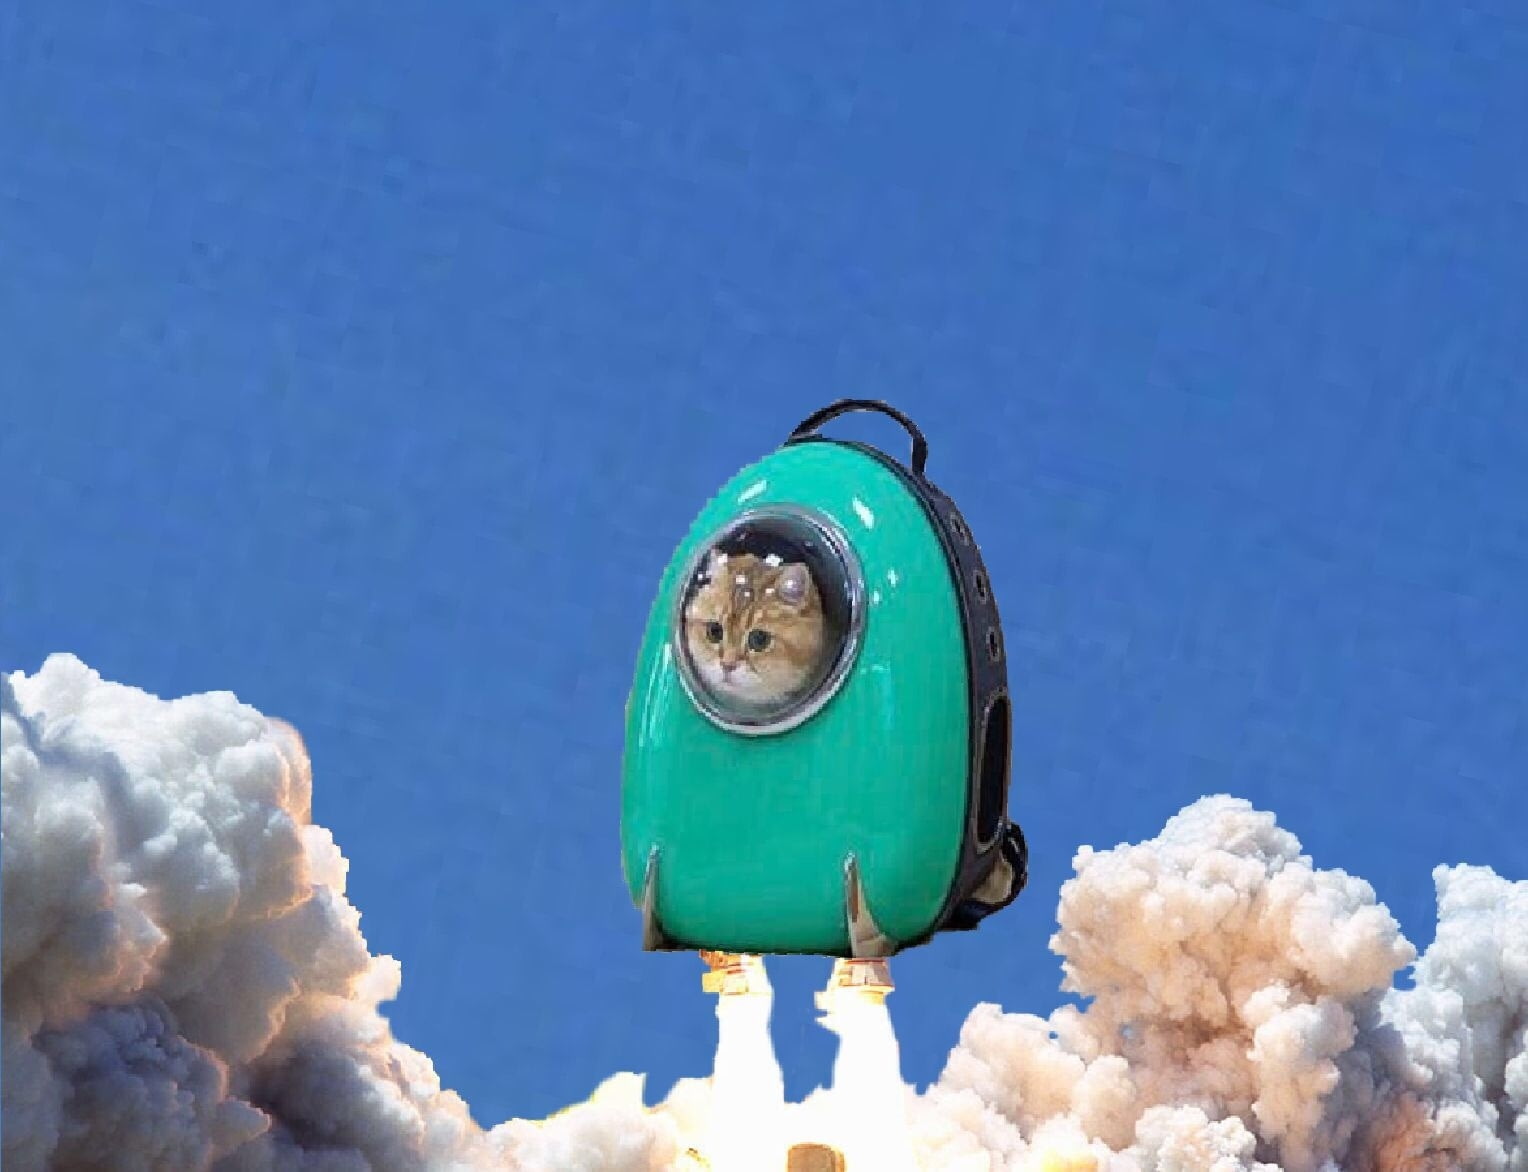 Кот в рюкзаке с иллюминатором